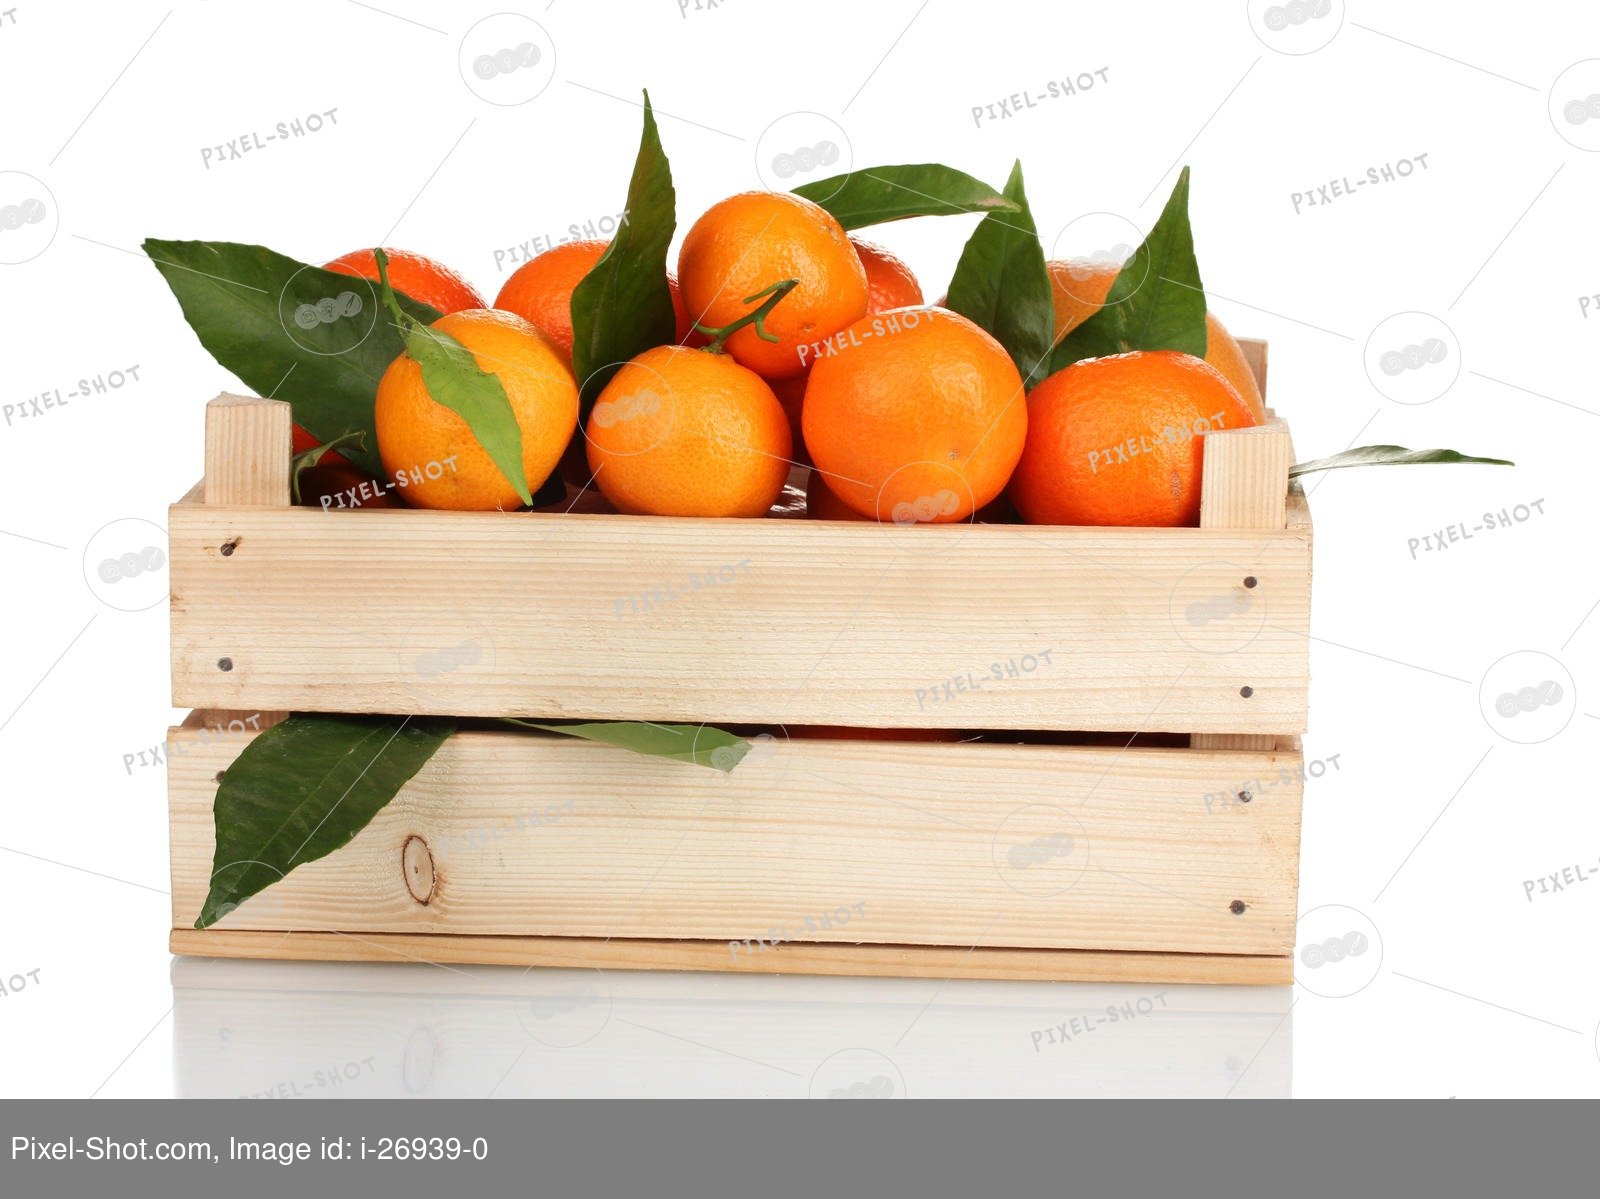 В пакете лежат мандарины. Ящик с апельсинами. Деревянный ящик с мандаринами. Деревянный ящик с апельсинами. Коробка с апельсинами.